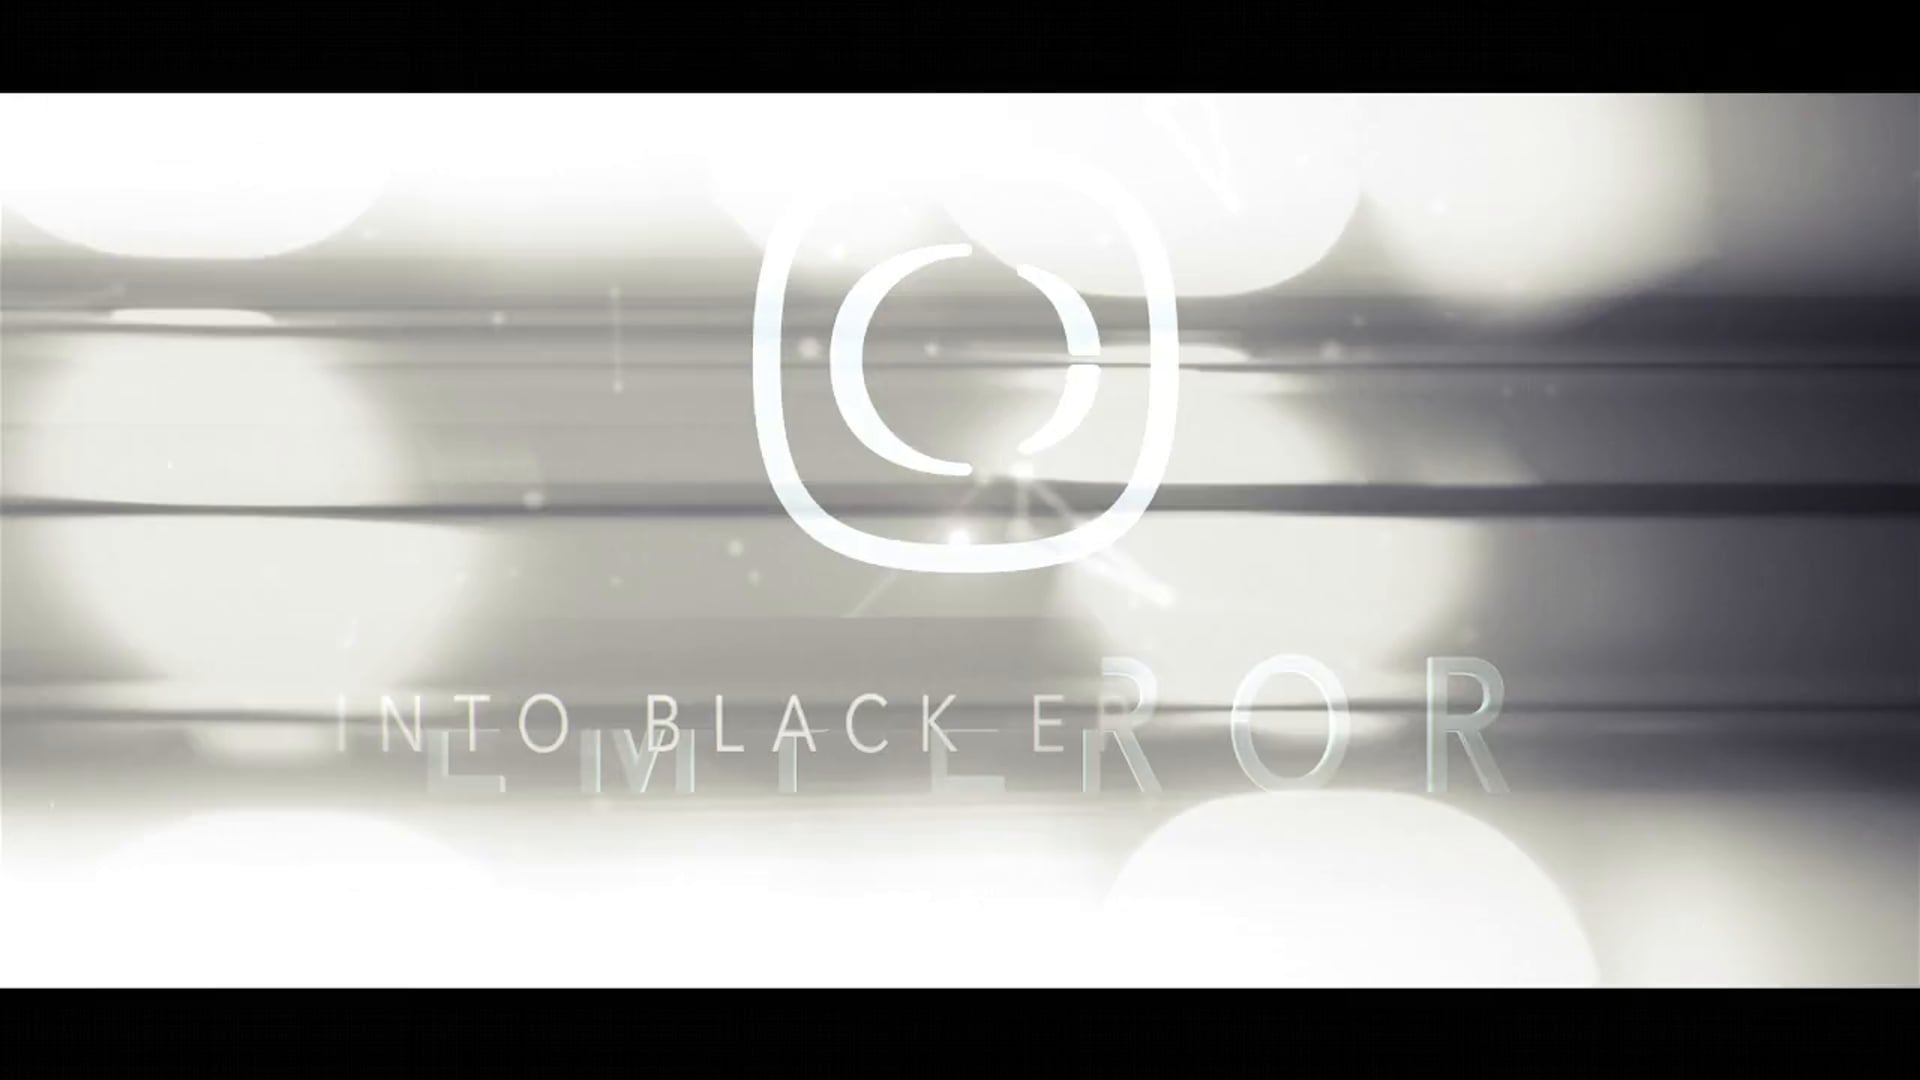 [Trailer] Emperor - "Into Black" EP [Critical]